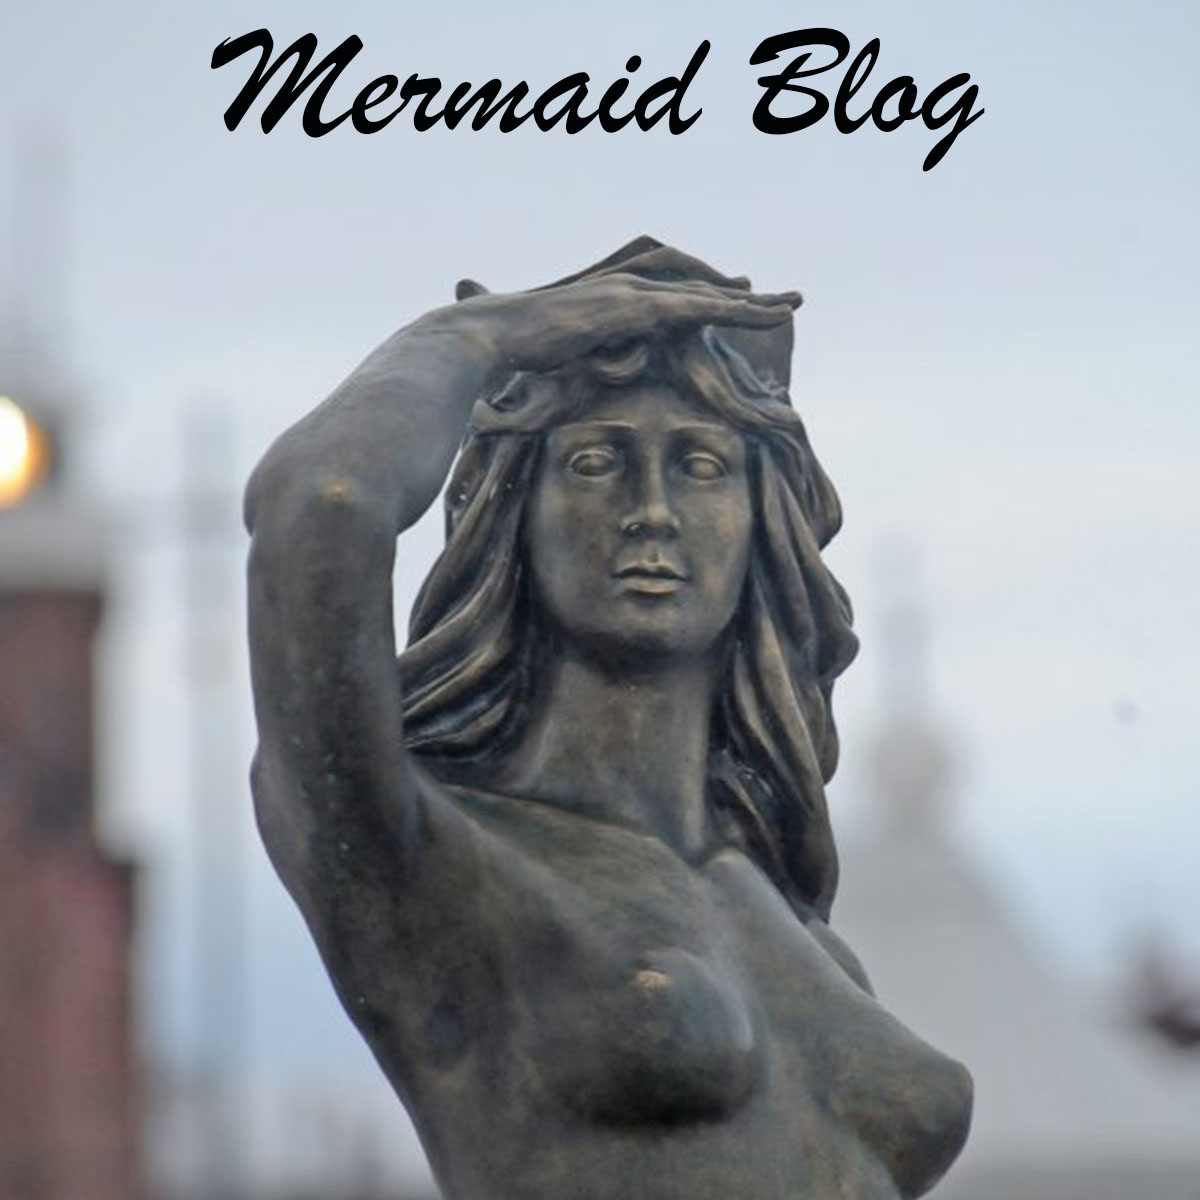 Mermaid Blog